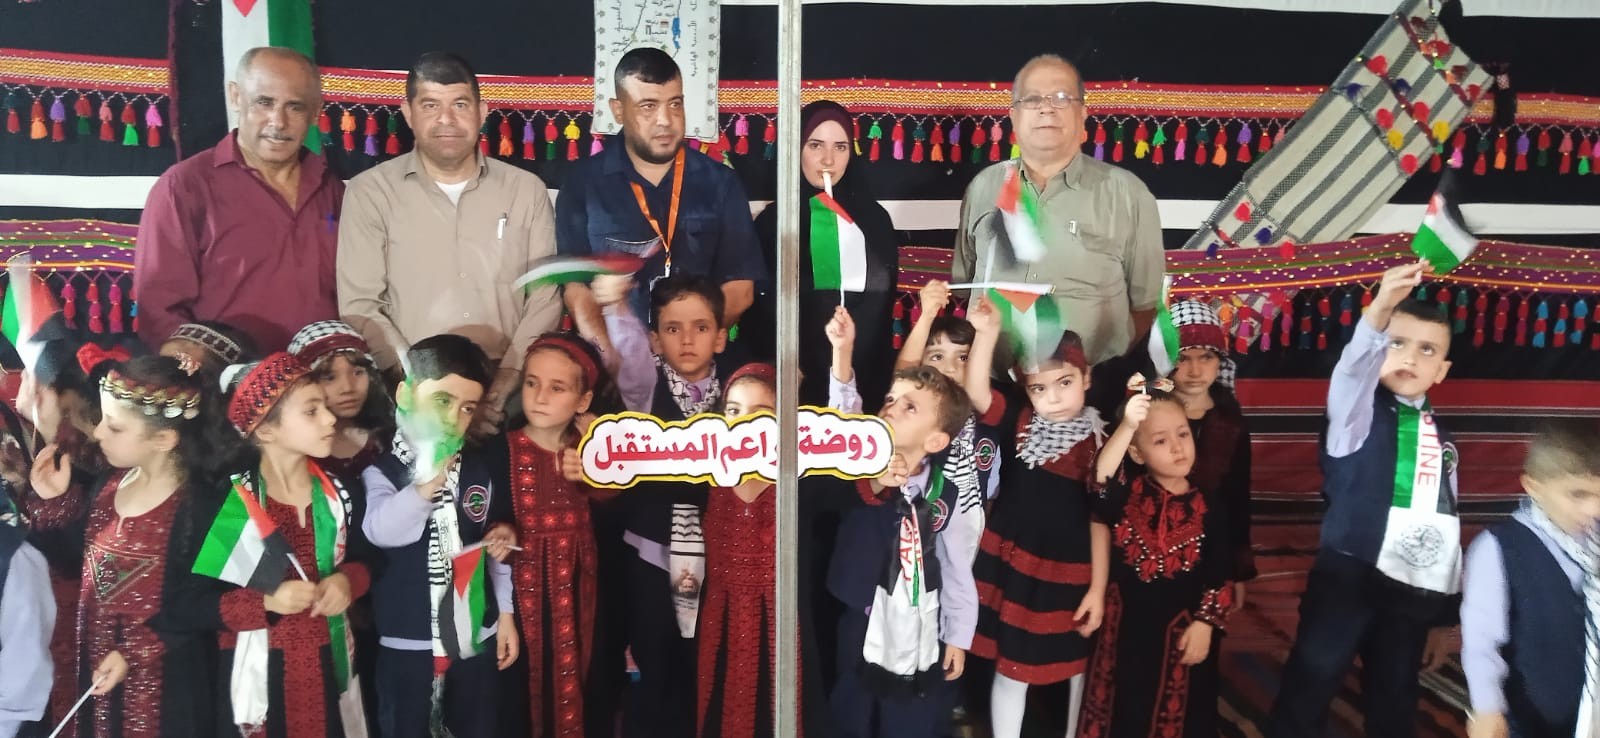 لجنة ذوي الإعاقة في التجمع الفلسطيني للوطن و الشتات تشارك في معرض البازار التراثي 4.jpg